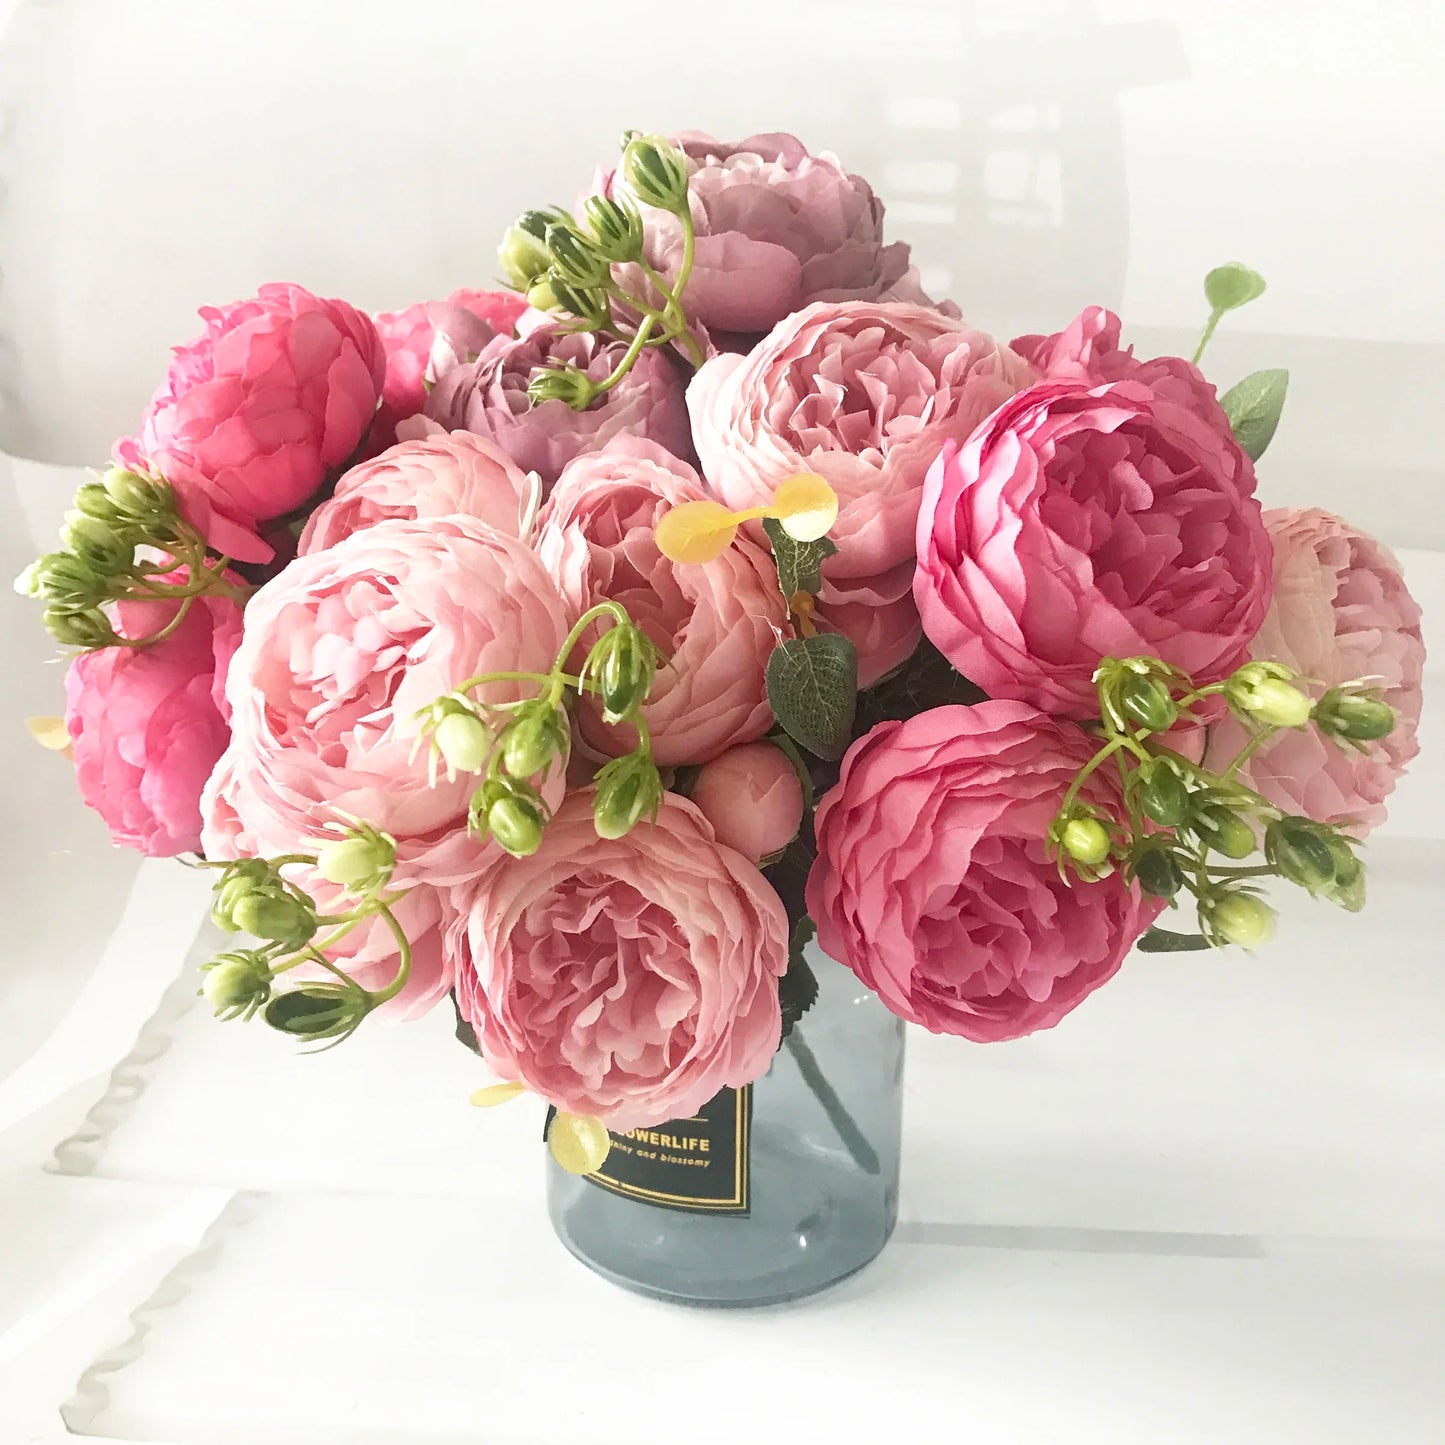 30 cm růžová růžová hedvábná pivoňka umělé květiny kytice 5 velká hlava a 4 bud levné falešné květiny pro domácí svatební dekoraci